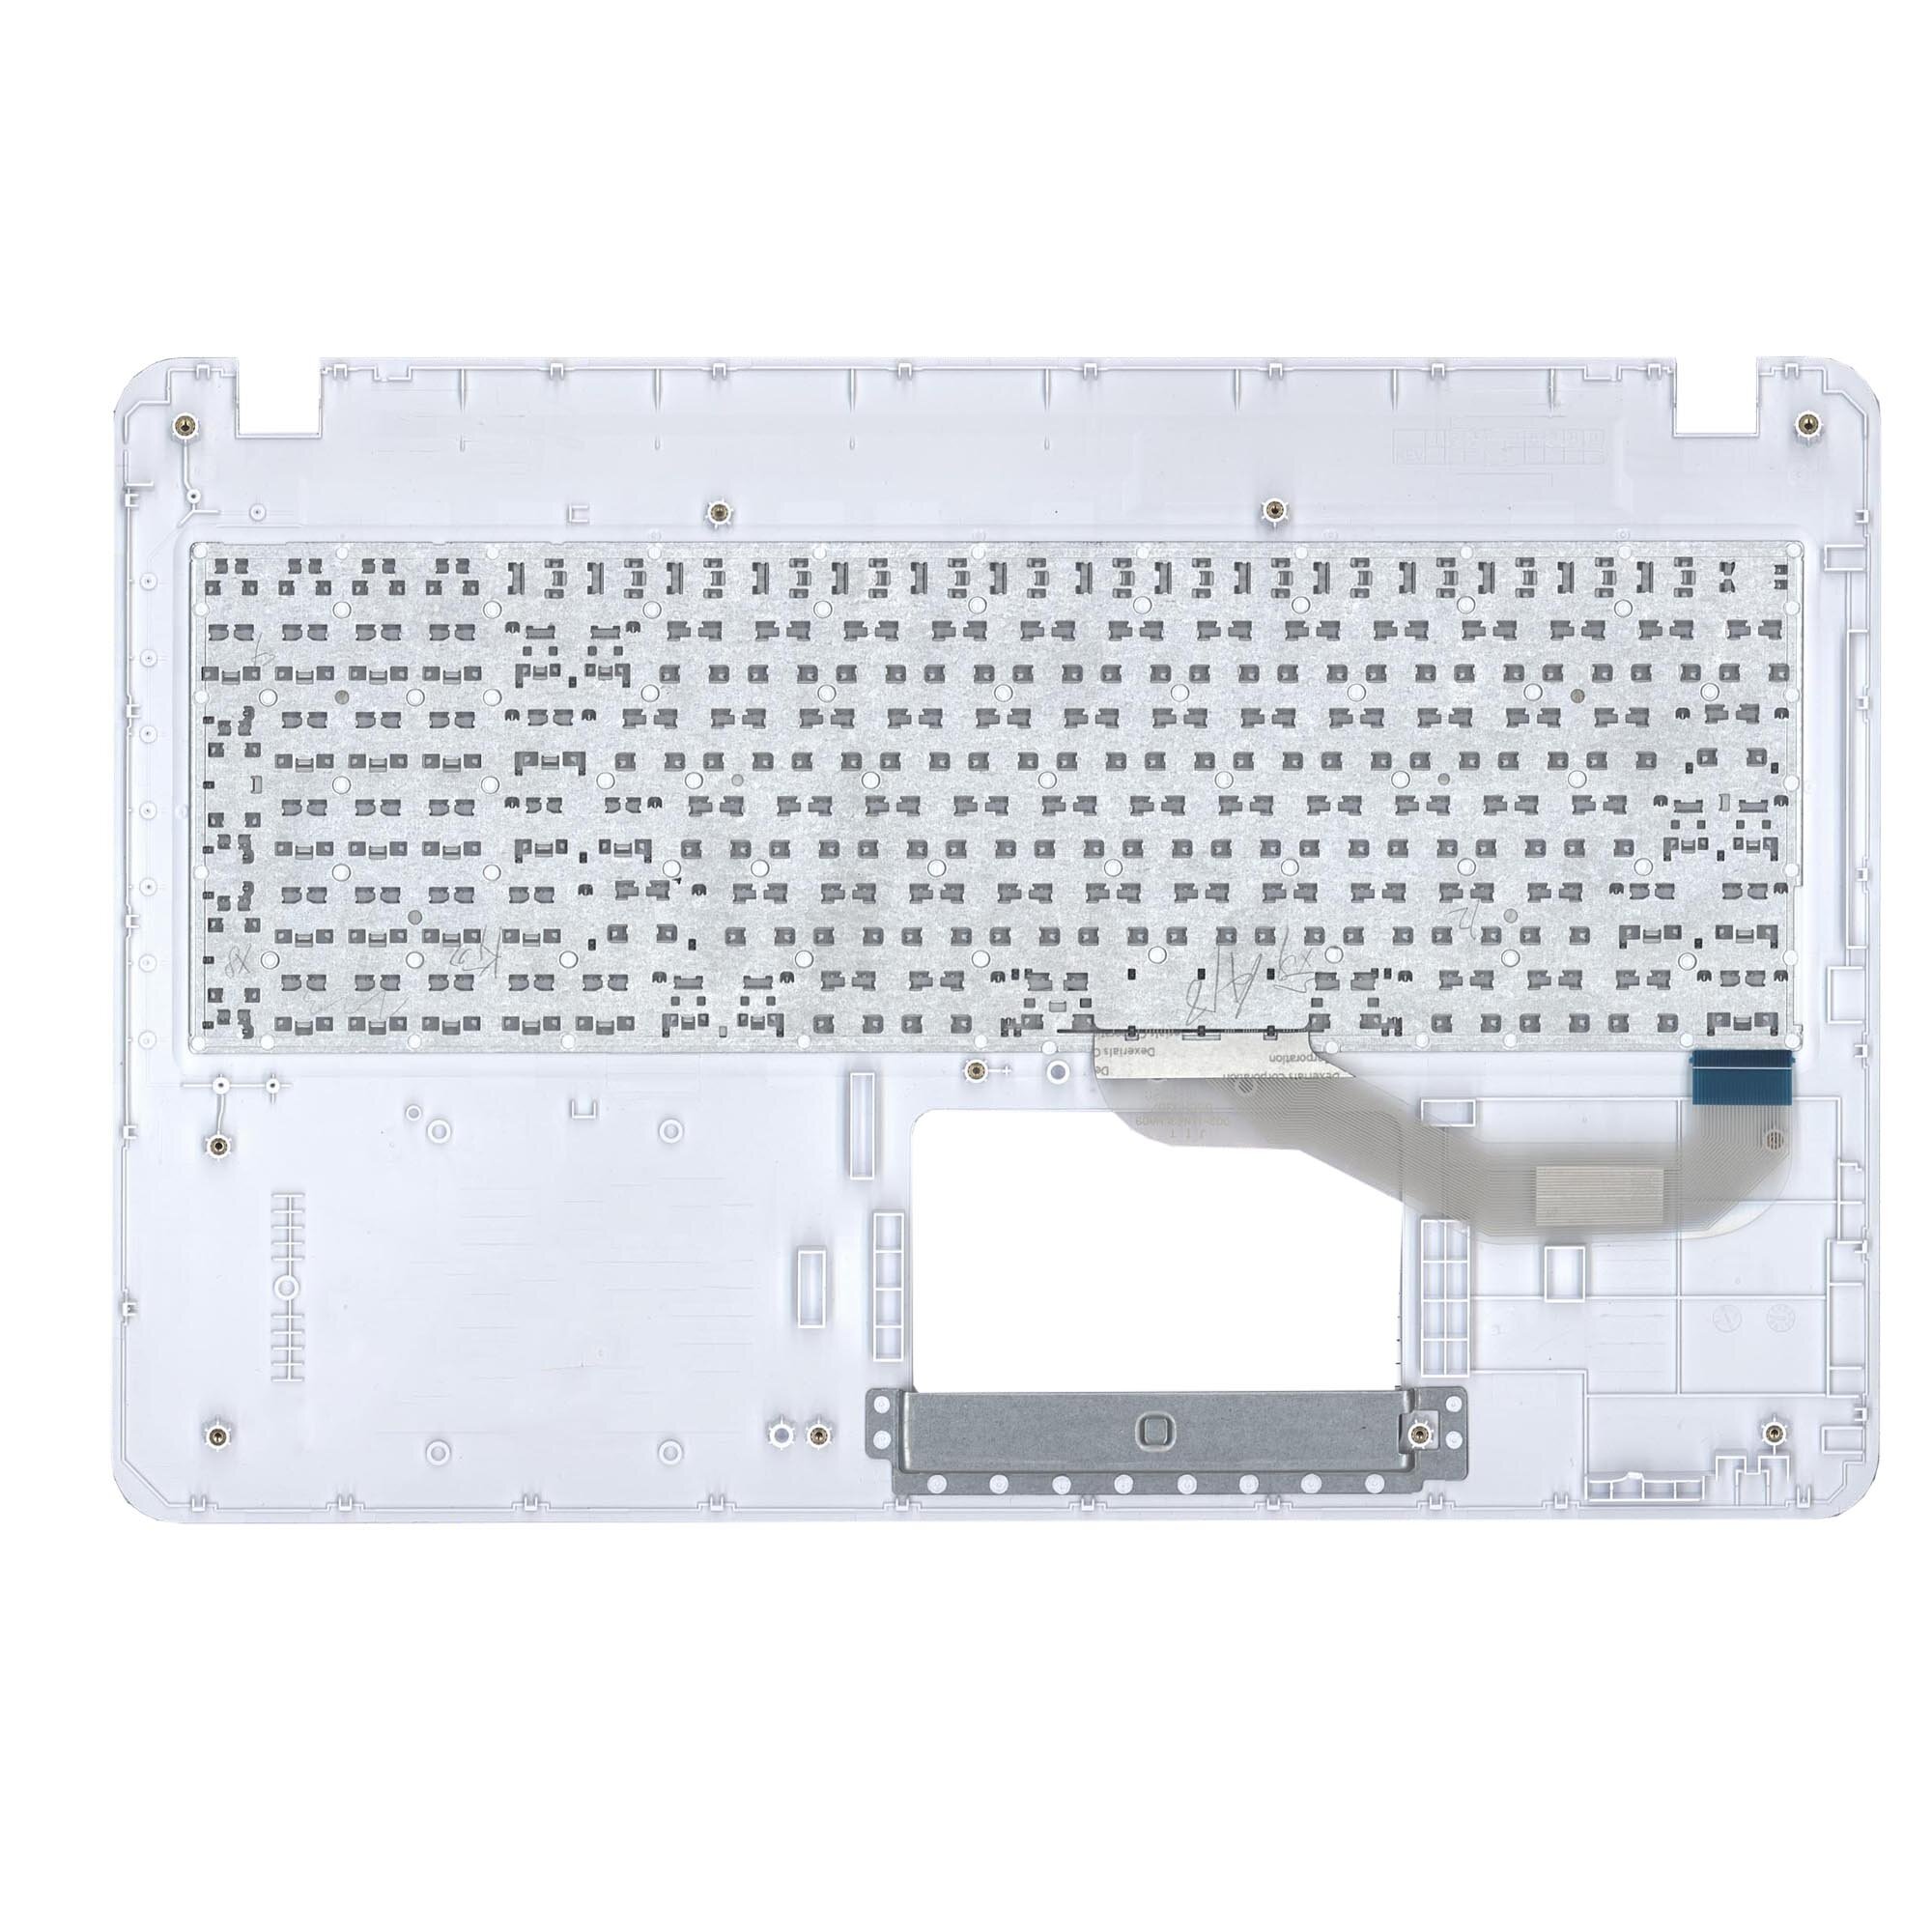 Клавиатура (топ-панель) для ноутбука Asus X540 белая с голубым топкейсом